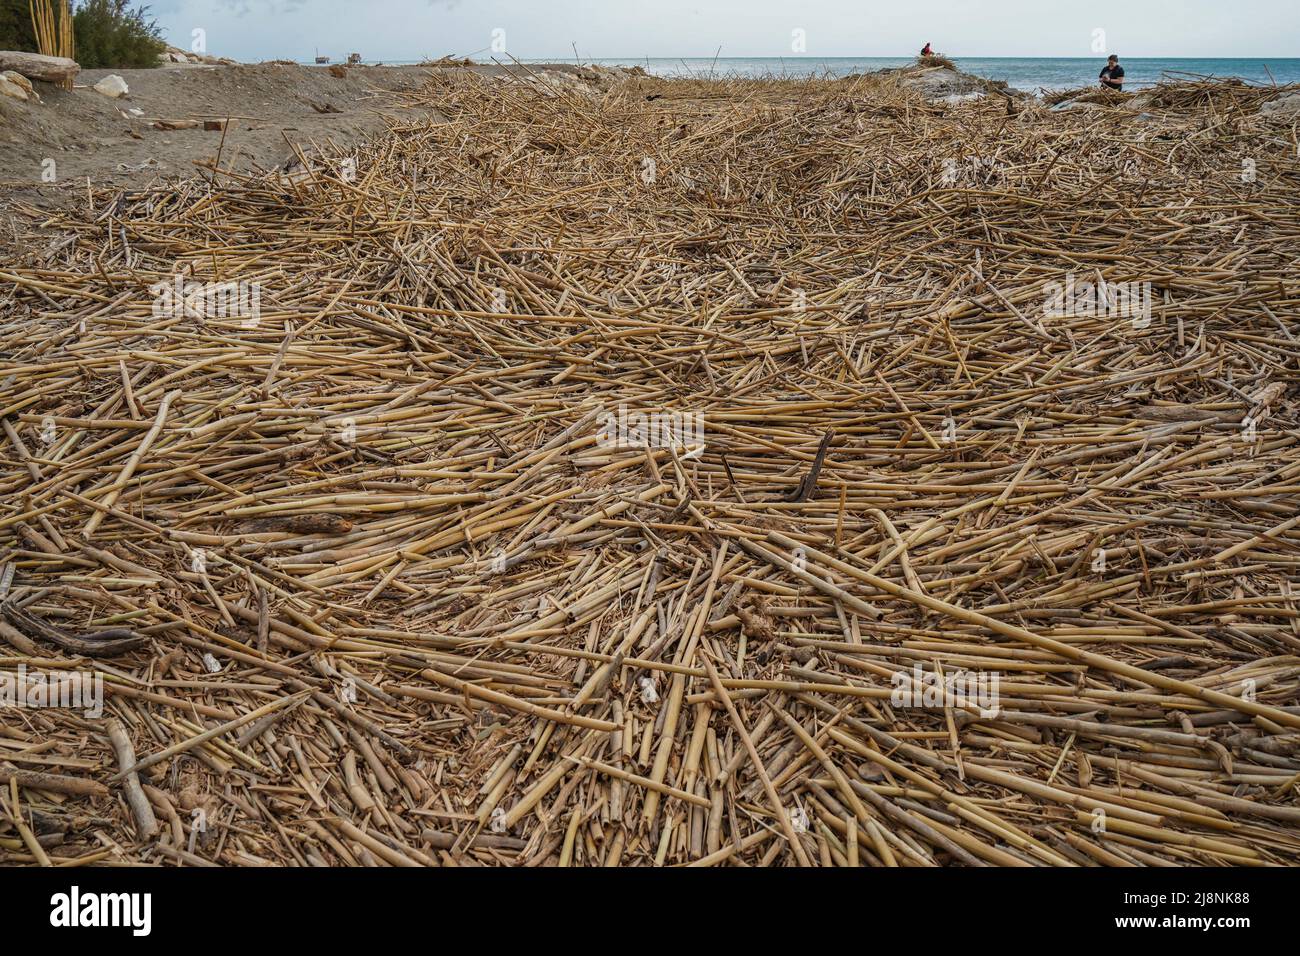 Escombros, bastones, bastones de caña gigantes, dejados después del tiempo severo, cubriendo la playa en la desembocadura del río Gudalhorce, Málaga, España. Foto de stock